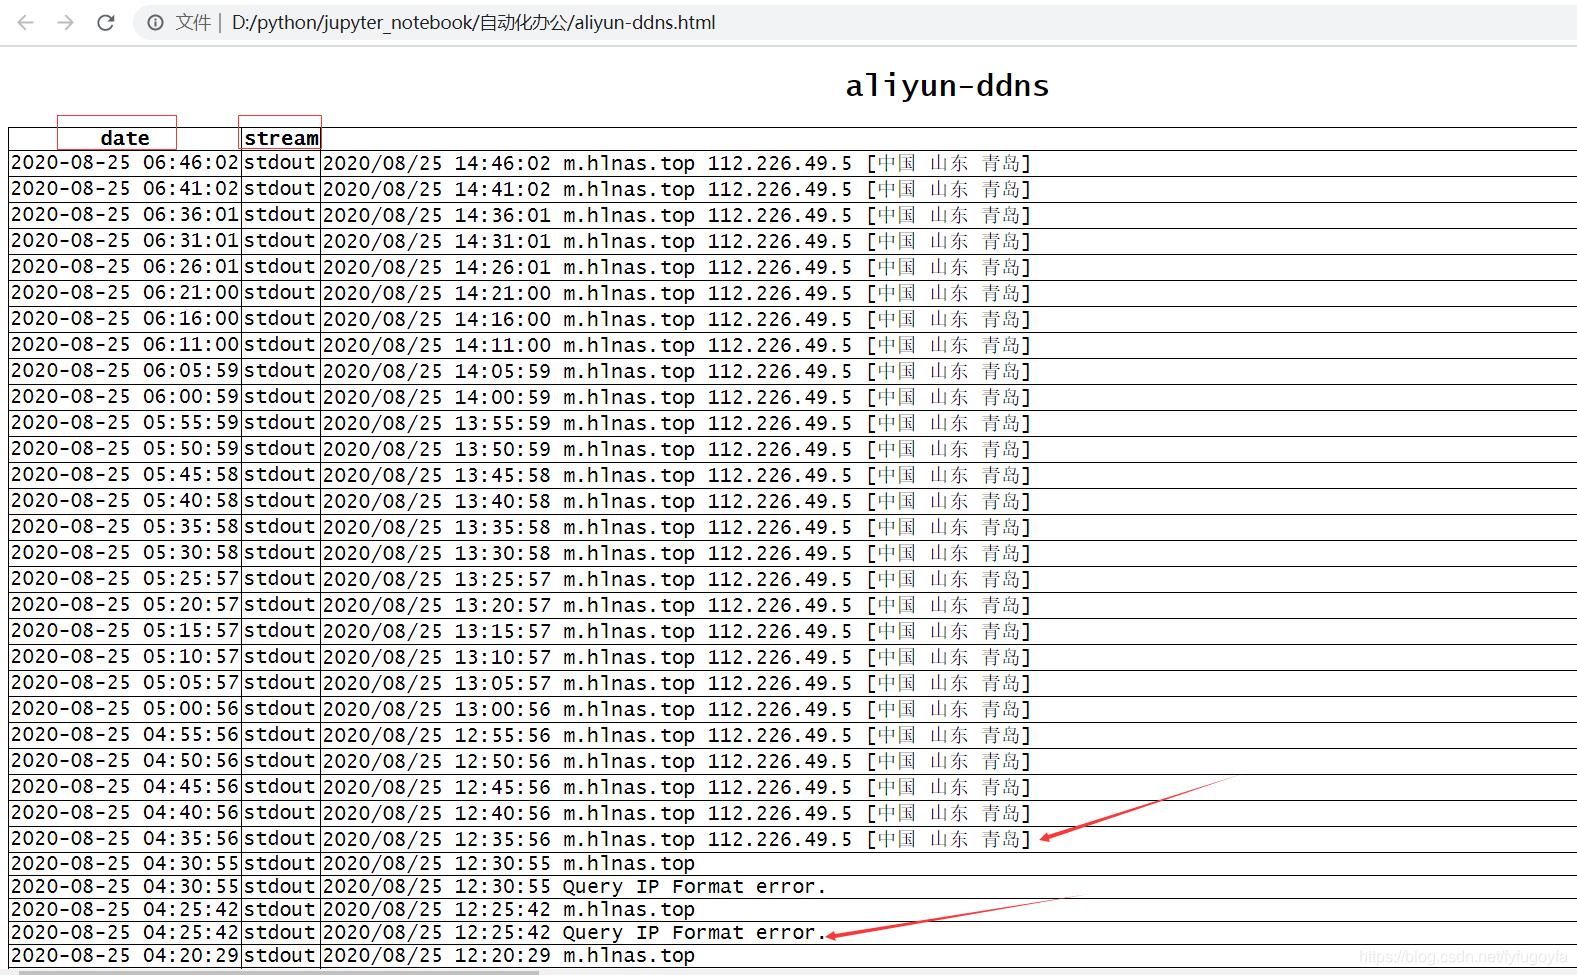 python 办公自动化系列 (1) 从22053条数据中统计断网次数并计算平均断网时间